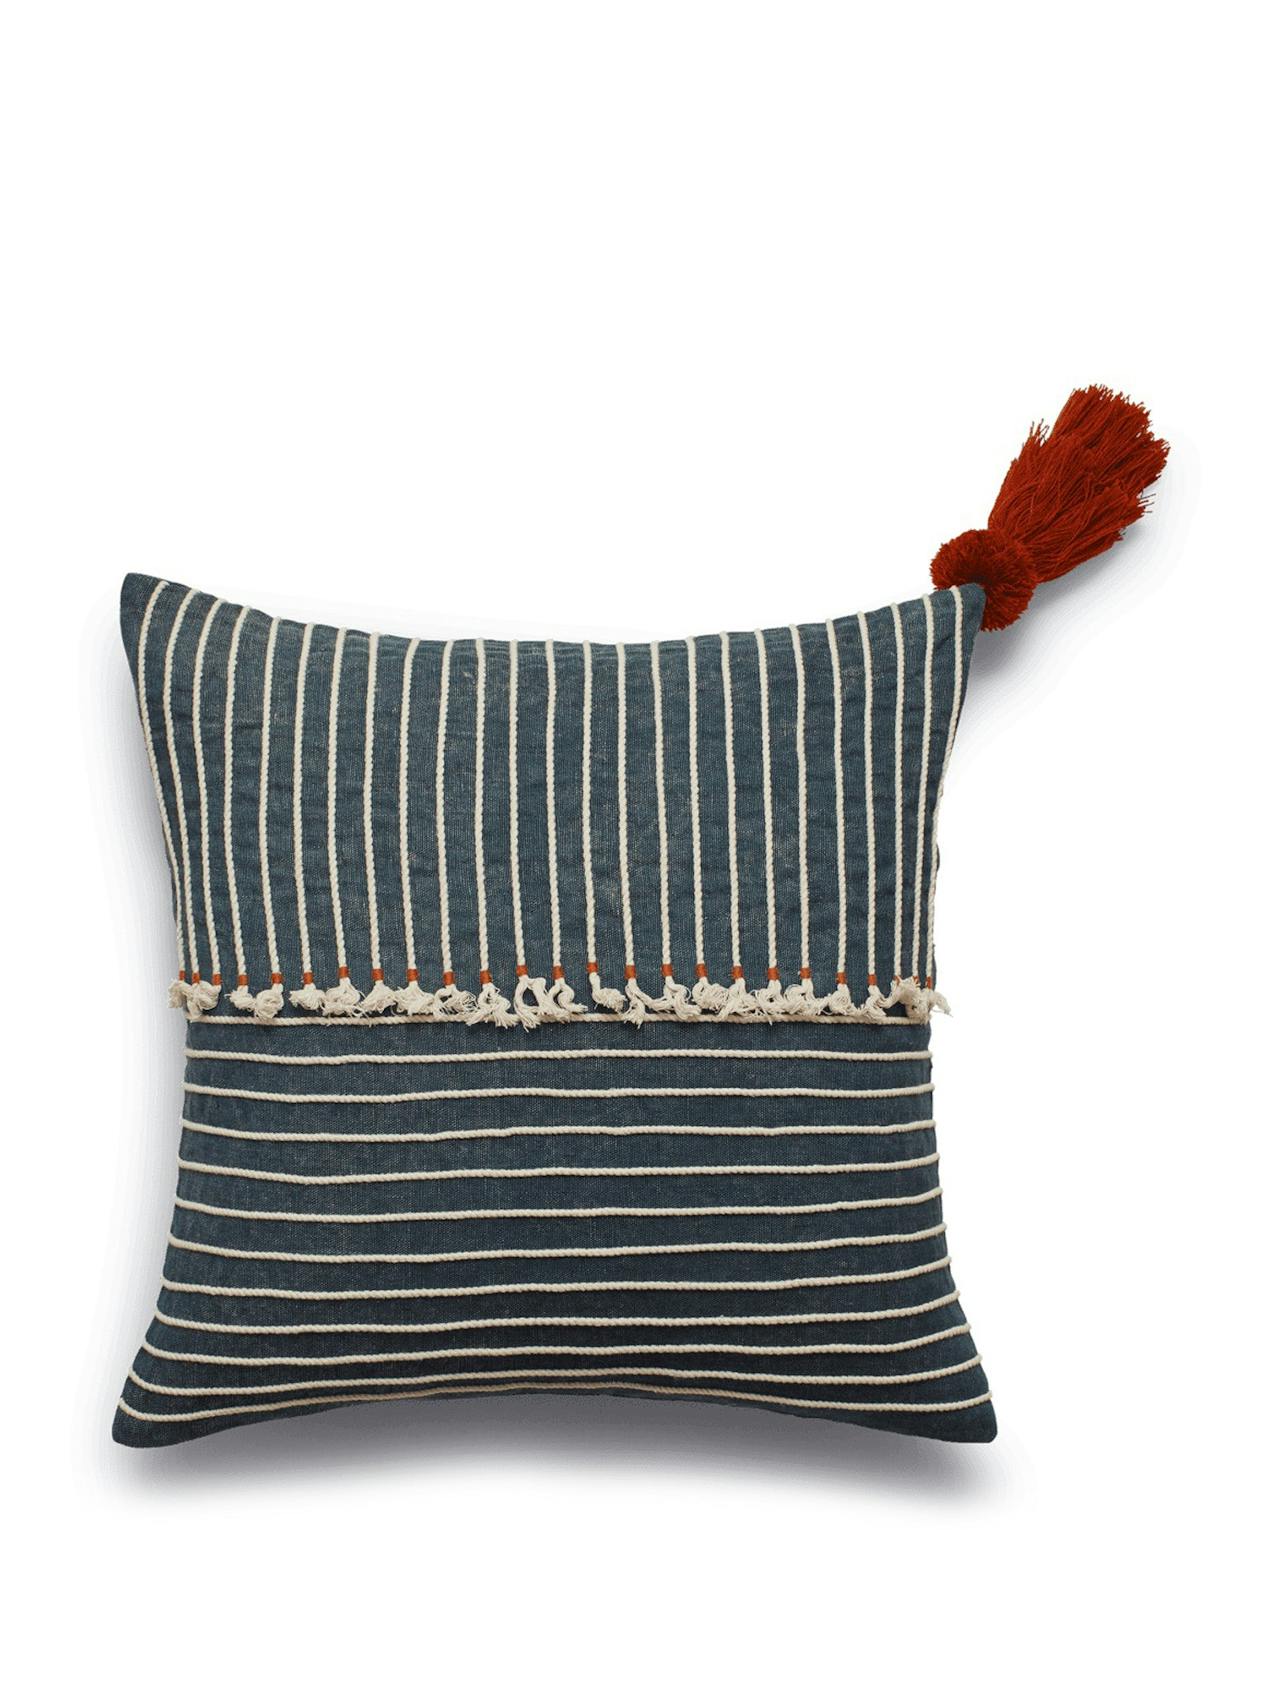 Kailani stripe cushion cover - indigo/white